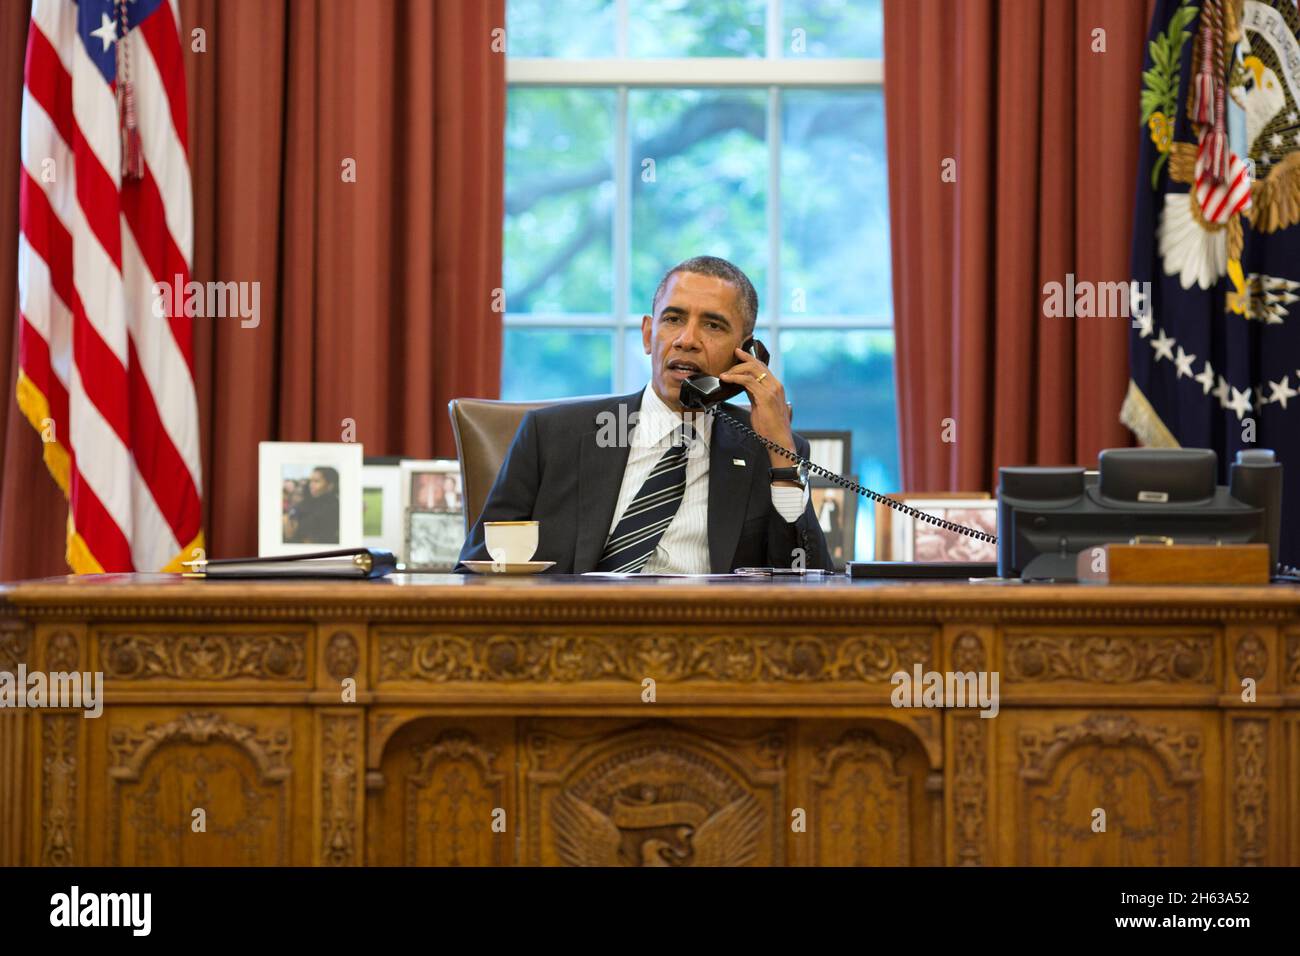 Le président Barack Obama s'est entretenu avec le Président Hassan Rohani de l'Iran au cours d'un appel téléphonique dans le bureau ovale, le 27 septembre 2013. Banque D'Images